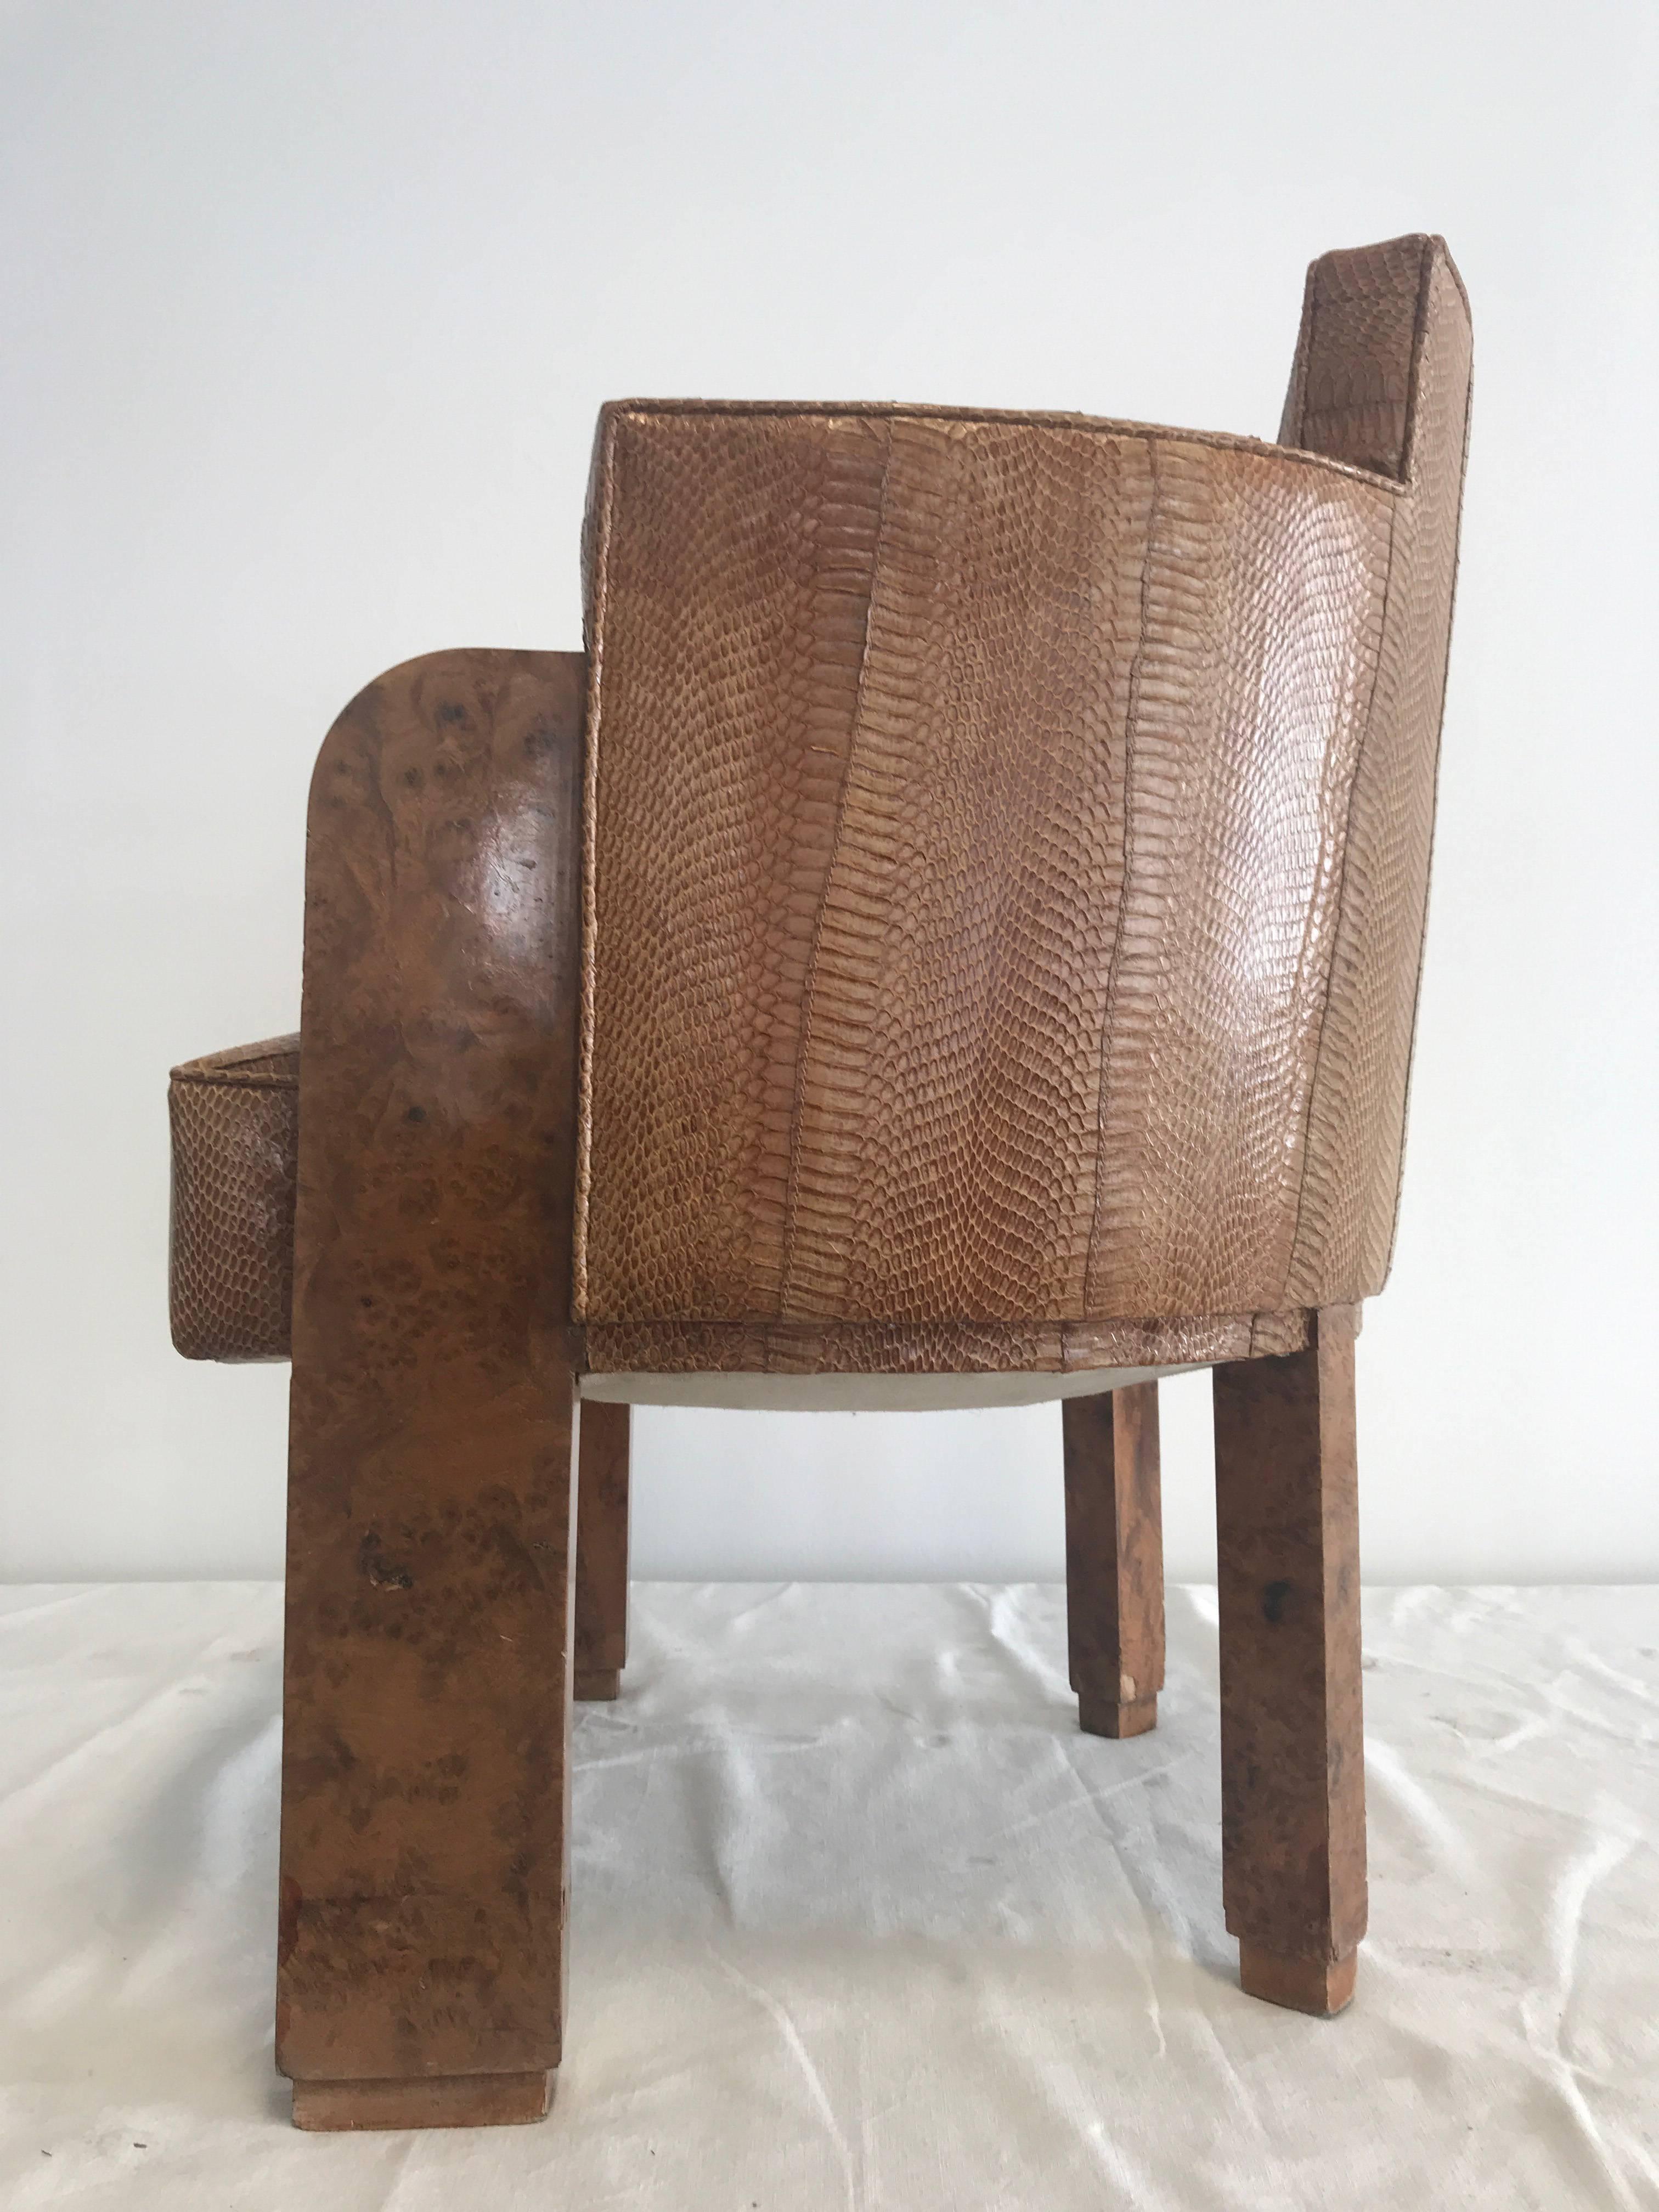 Michel Duffet Sessel, die Holzteile sind mit Ulmenwurzel-Furnier überzogen, Polsterung mit Schlangenhaut, das Furnier ist nicht perfekt - kleine Schäden wie auf den Bildern zu sehen,
Der Stuhl ist an der Rückenlehne 73 cm hoch, 56 cm breit, die